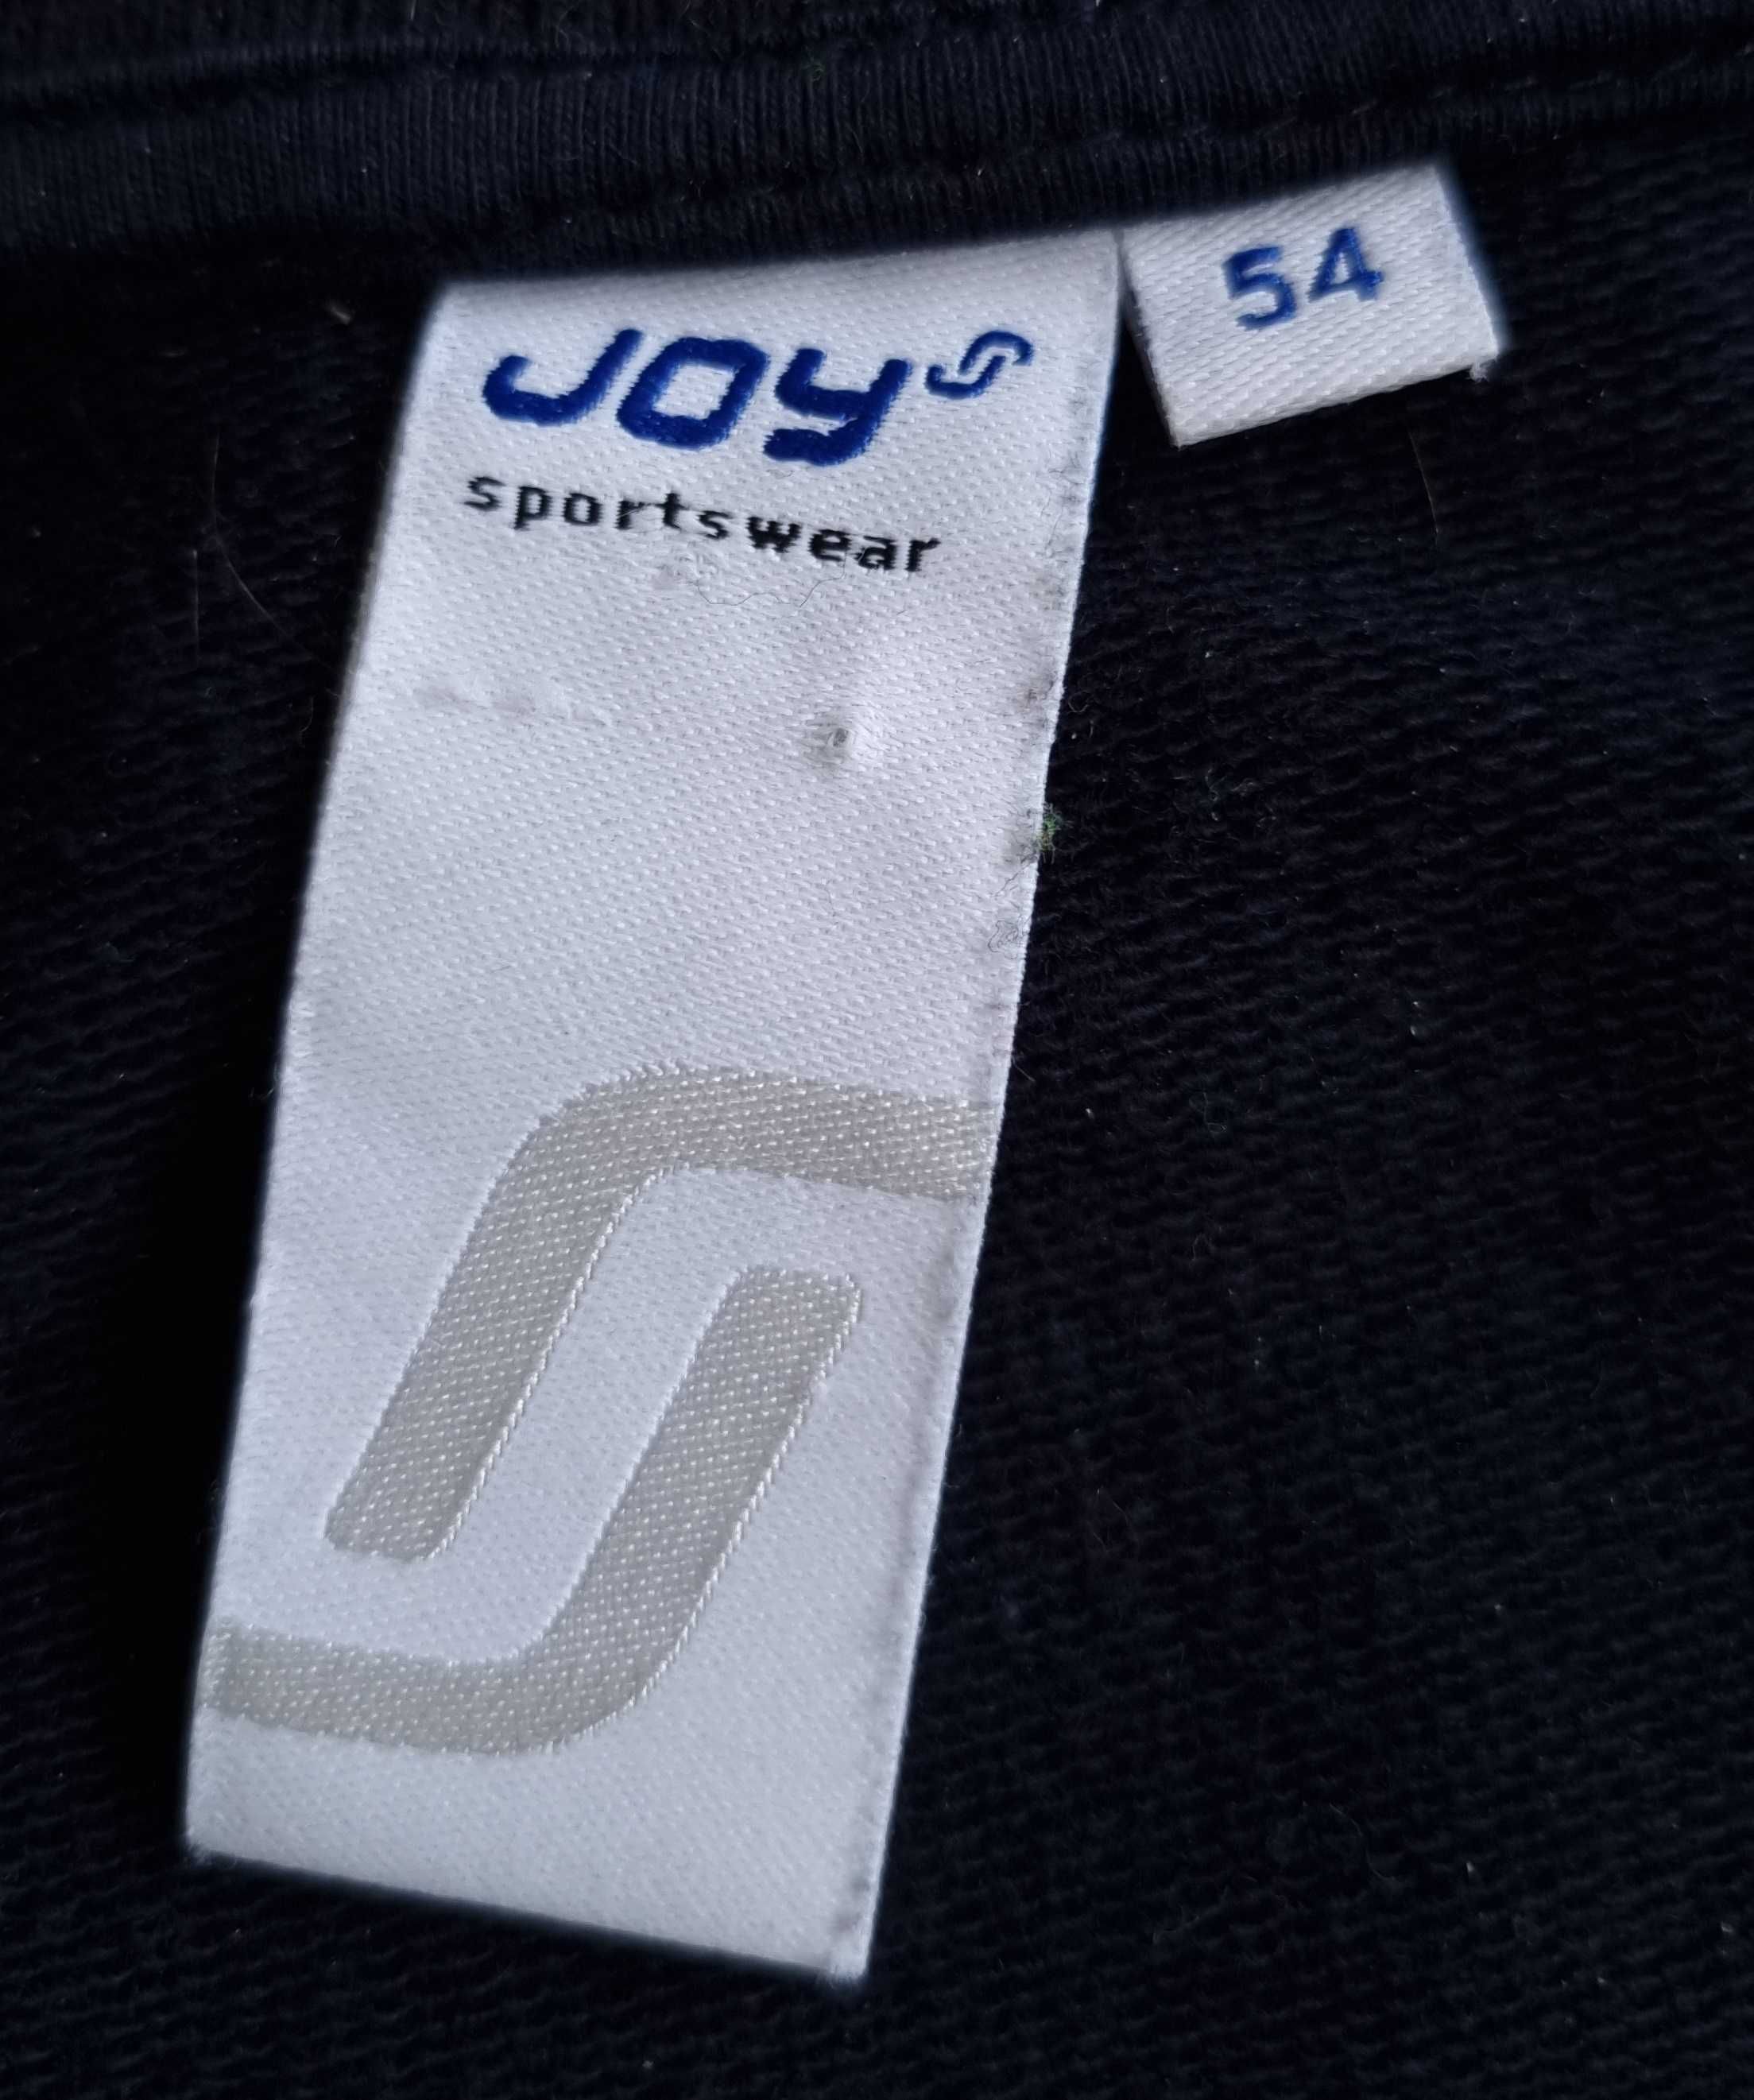 Granatowa BLUZA MĘSKA JOY Sportswear ROZPINANA NA ZAMEK kieszenie r 54